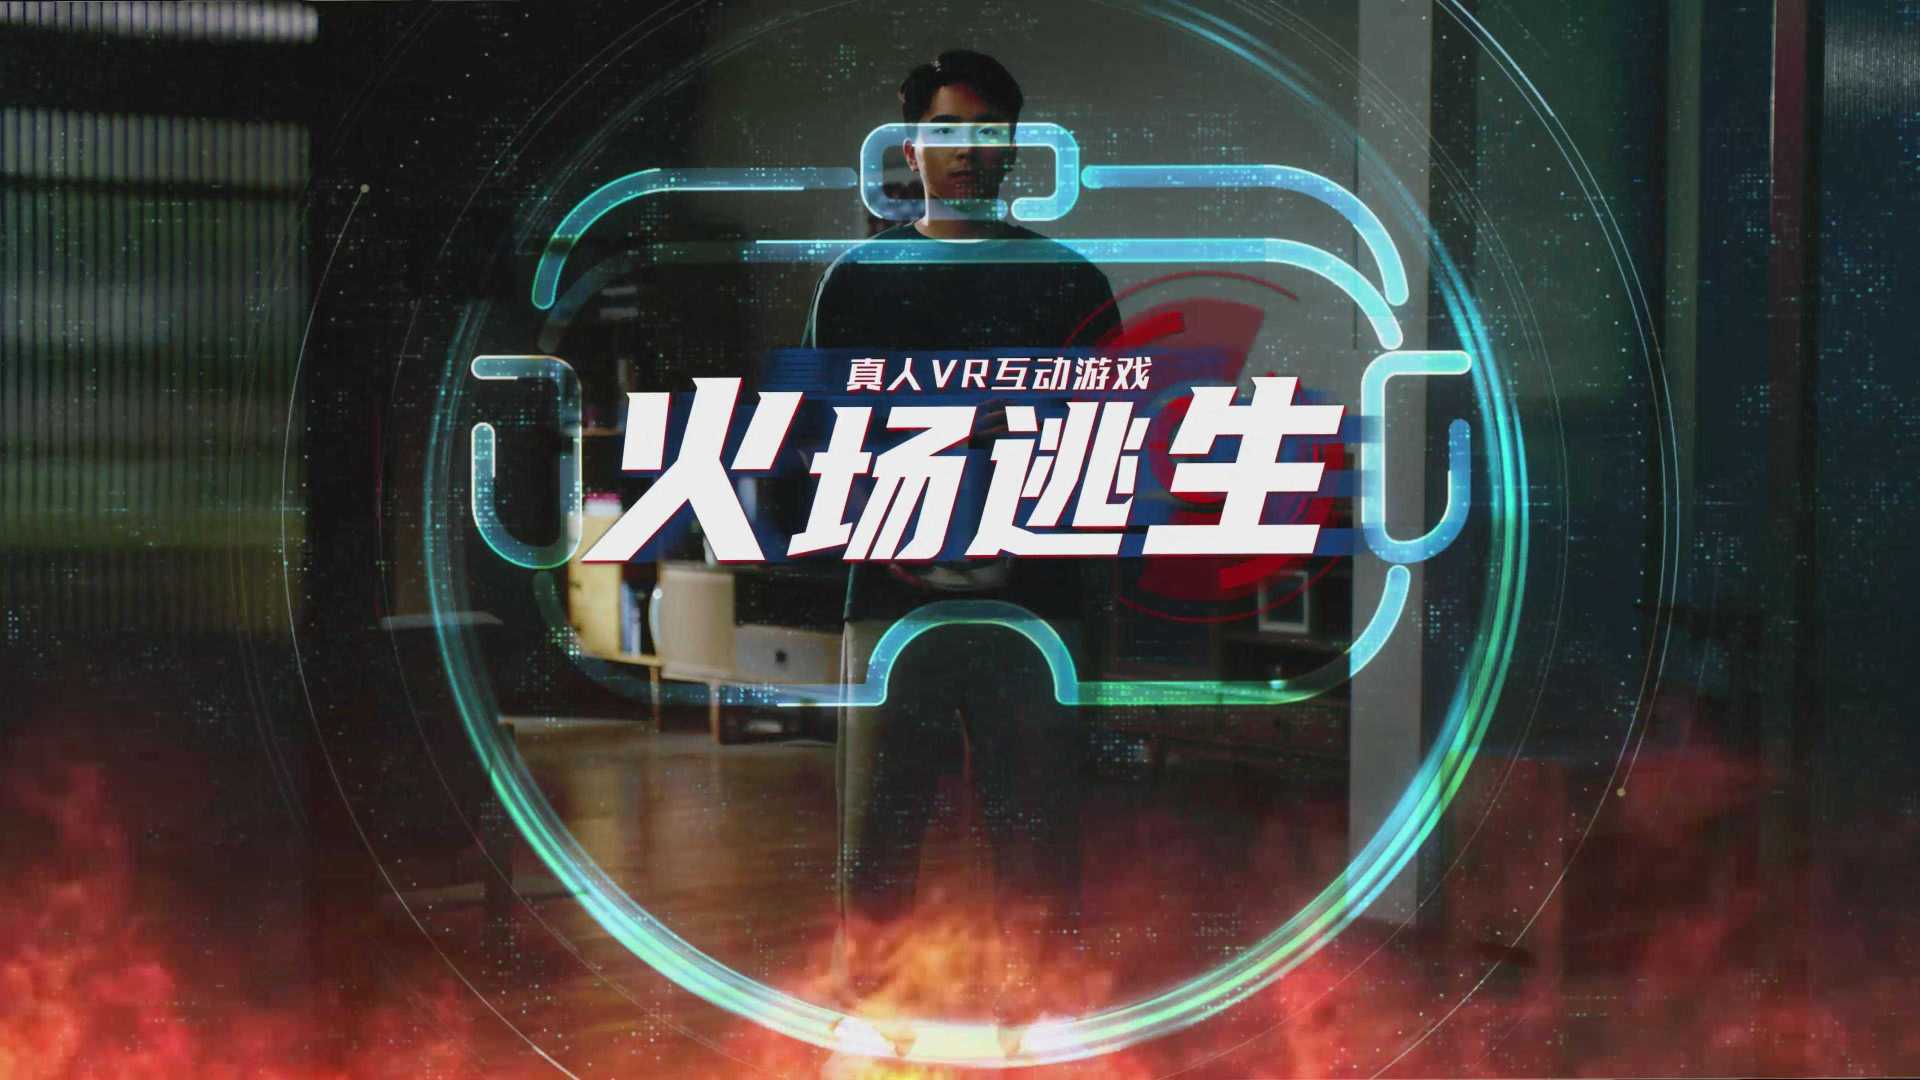 北京消防公益宣传片-真人VR互动游戏《火场逃生》